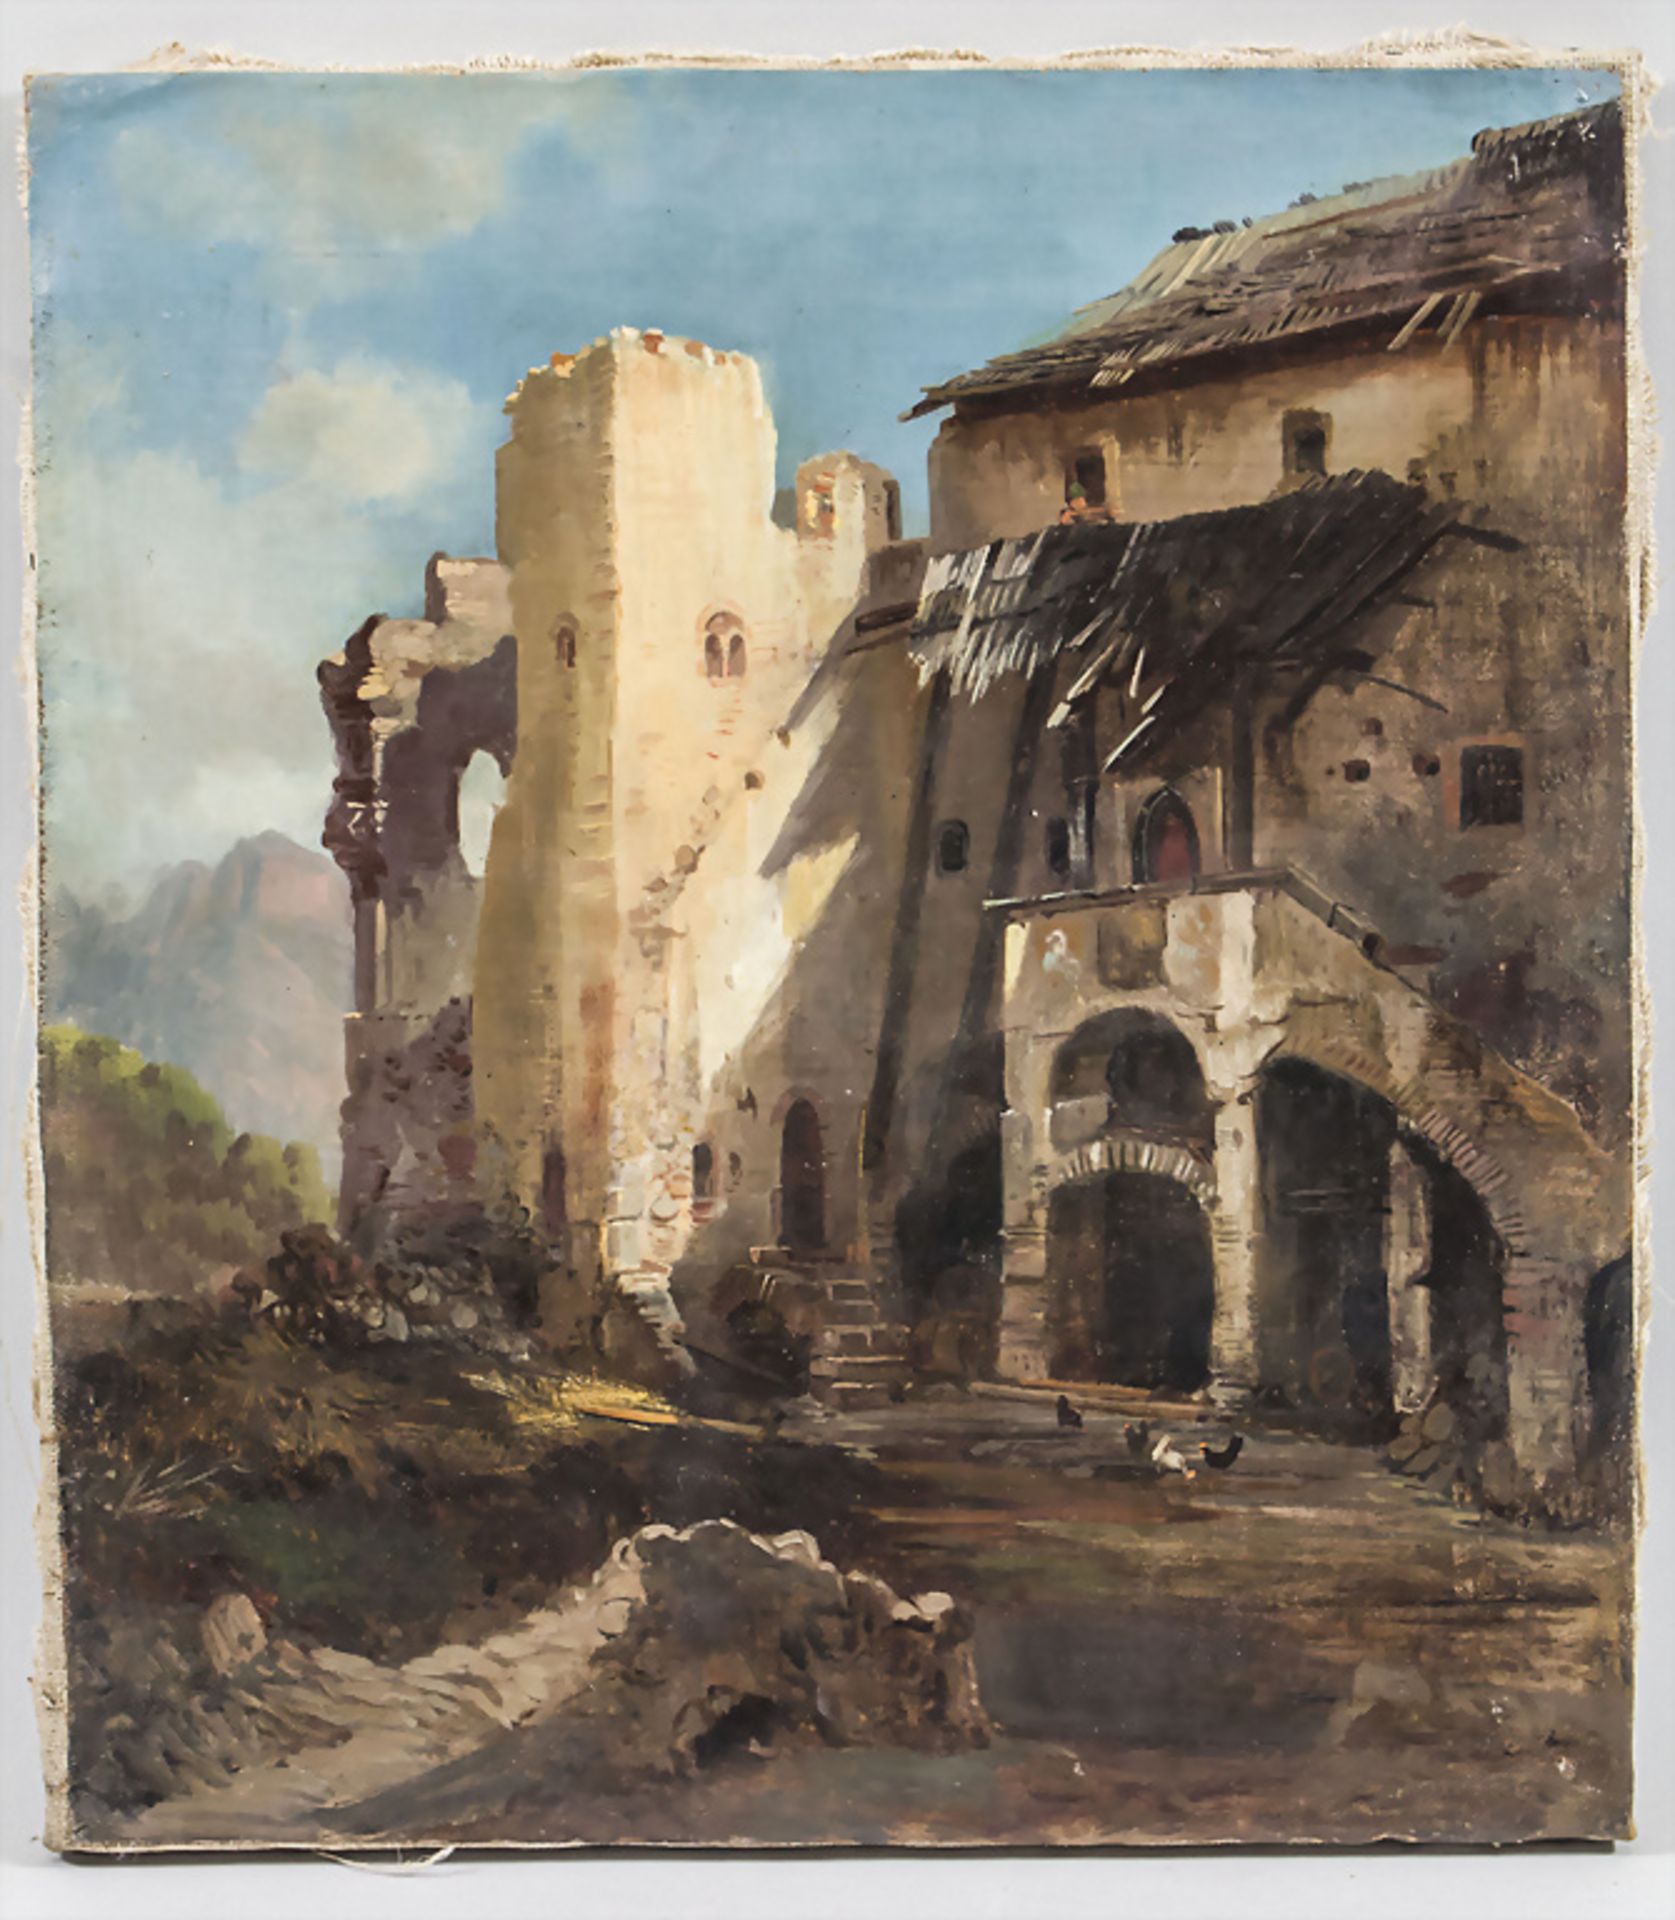 Unbekannter Künstler des 18./19. Jh., 'Ruine einer Klosteranlage' / 'Ruins of a monastery' - Image 2 of 3